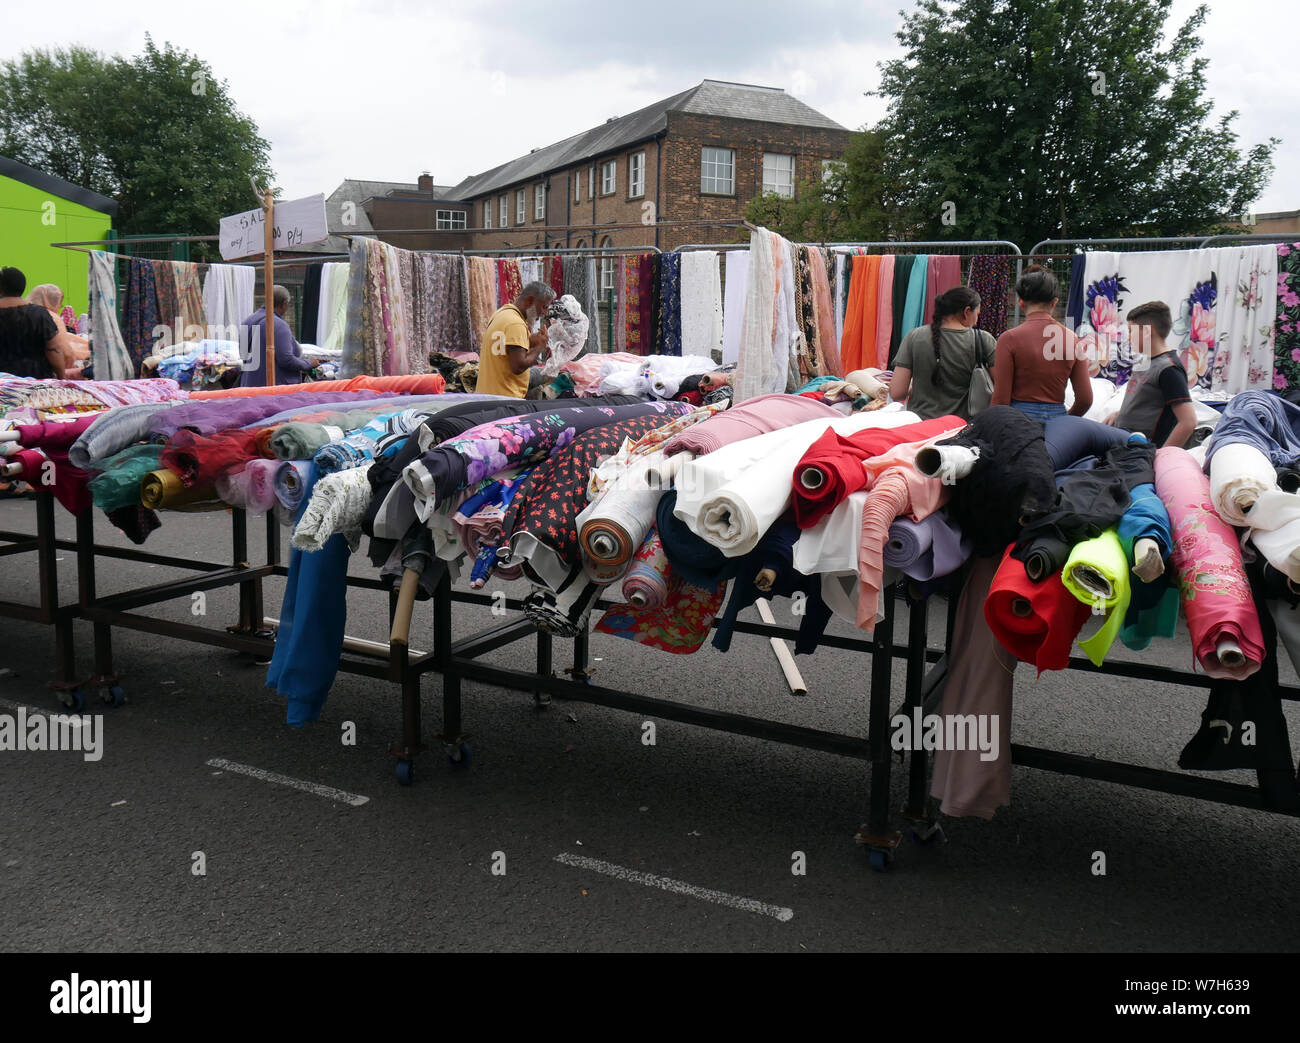 Les acheteurs asiatiques à la recherche de rouleaux de tissus et matériaux alors que des magasins Bolton marché plein air en Angleterre. photo DON TONGE Banque D'Images